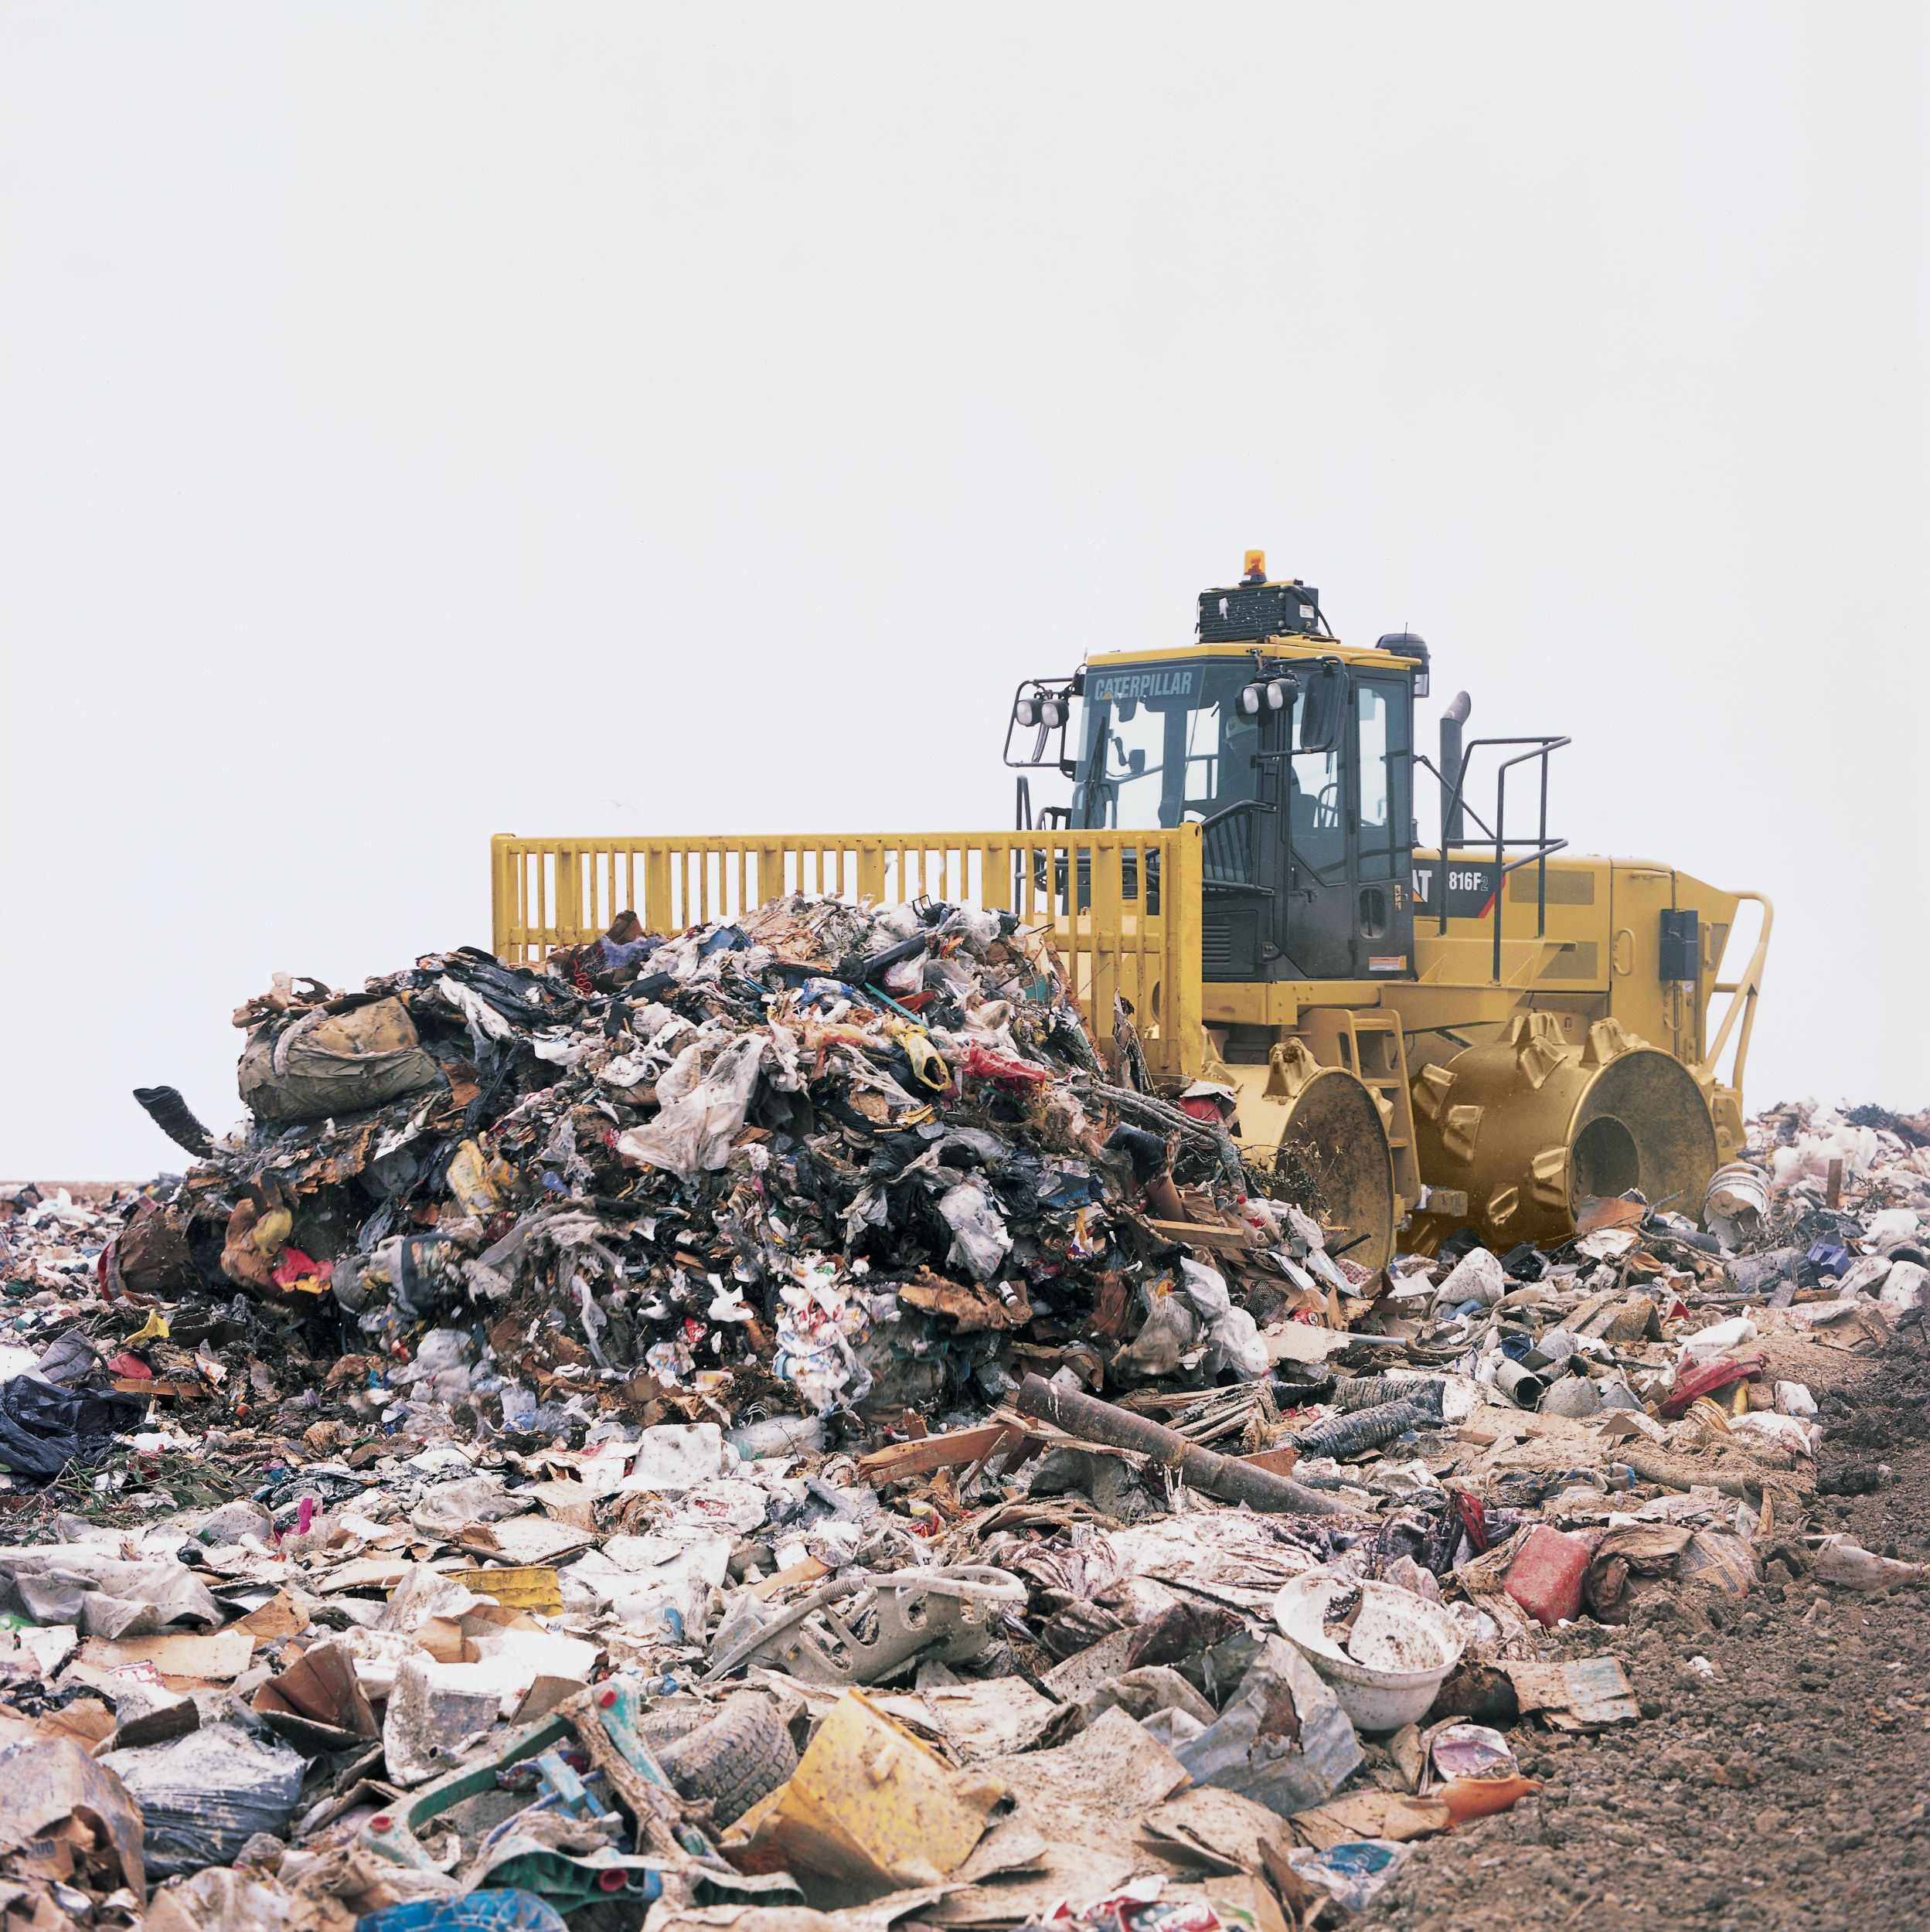 Compacteur à déchets Cat 816 dans la poubelle